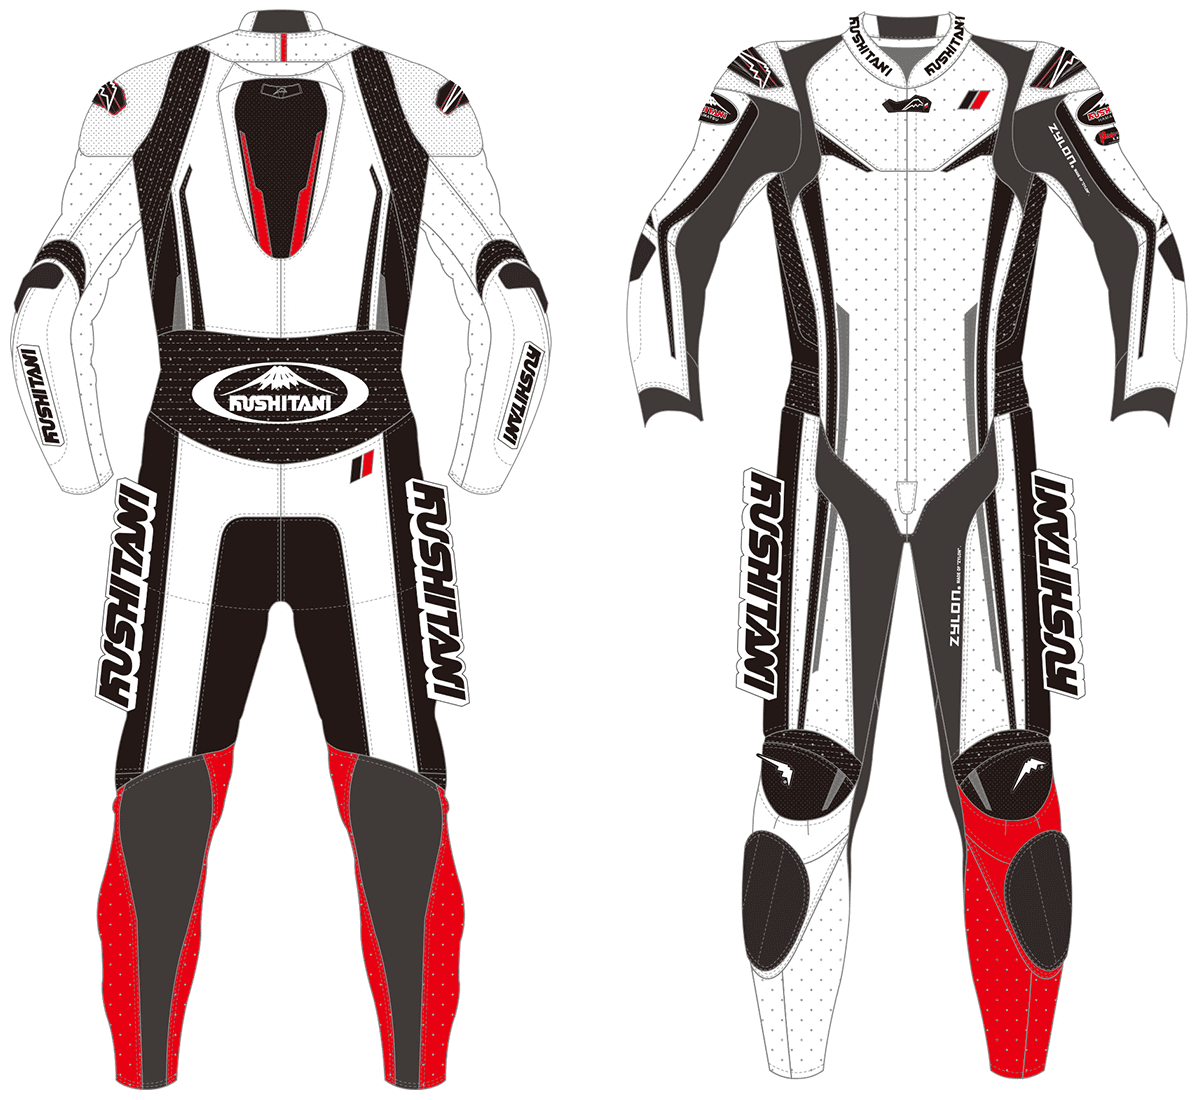 クシタニ”新型レーシングスーツが登場！お得な特典盛りだくさんのモニターフェアを11月1日からスタート - バイクトピックス - レディスバイク